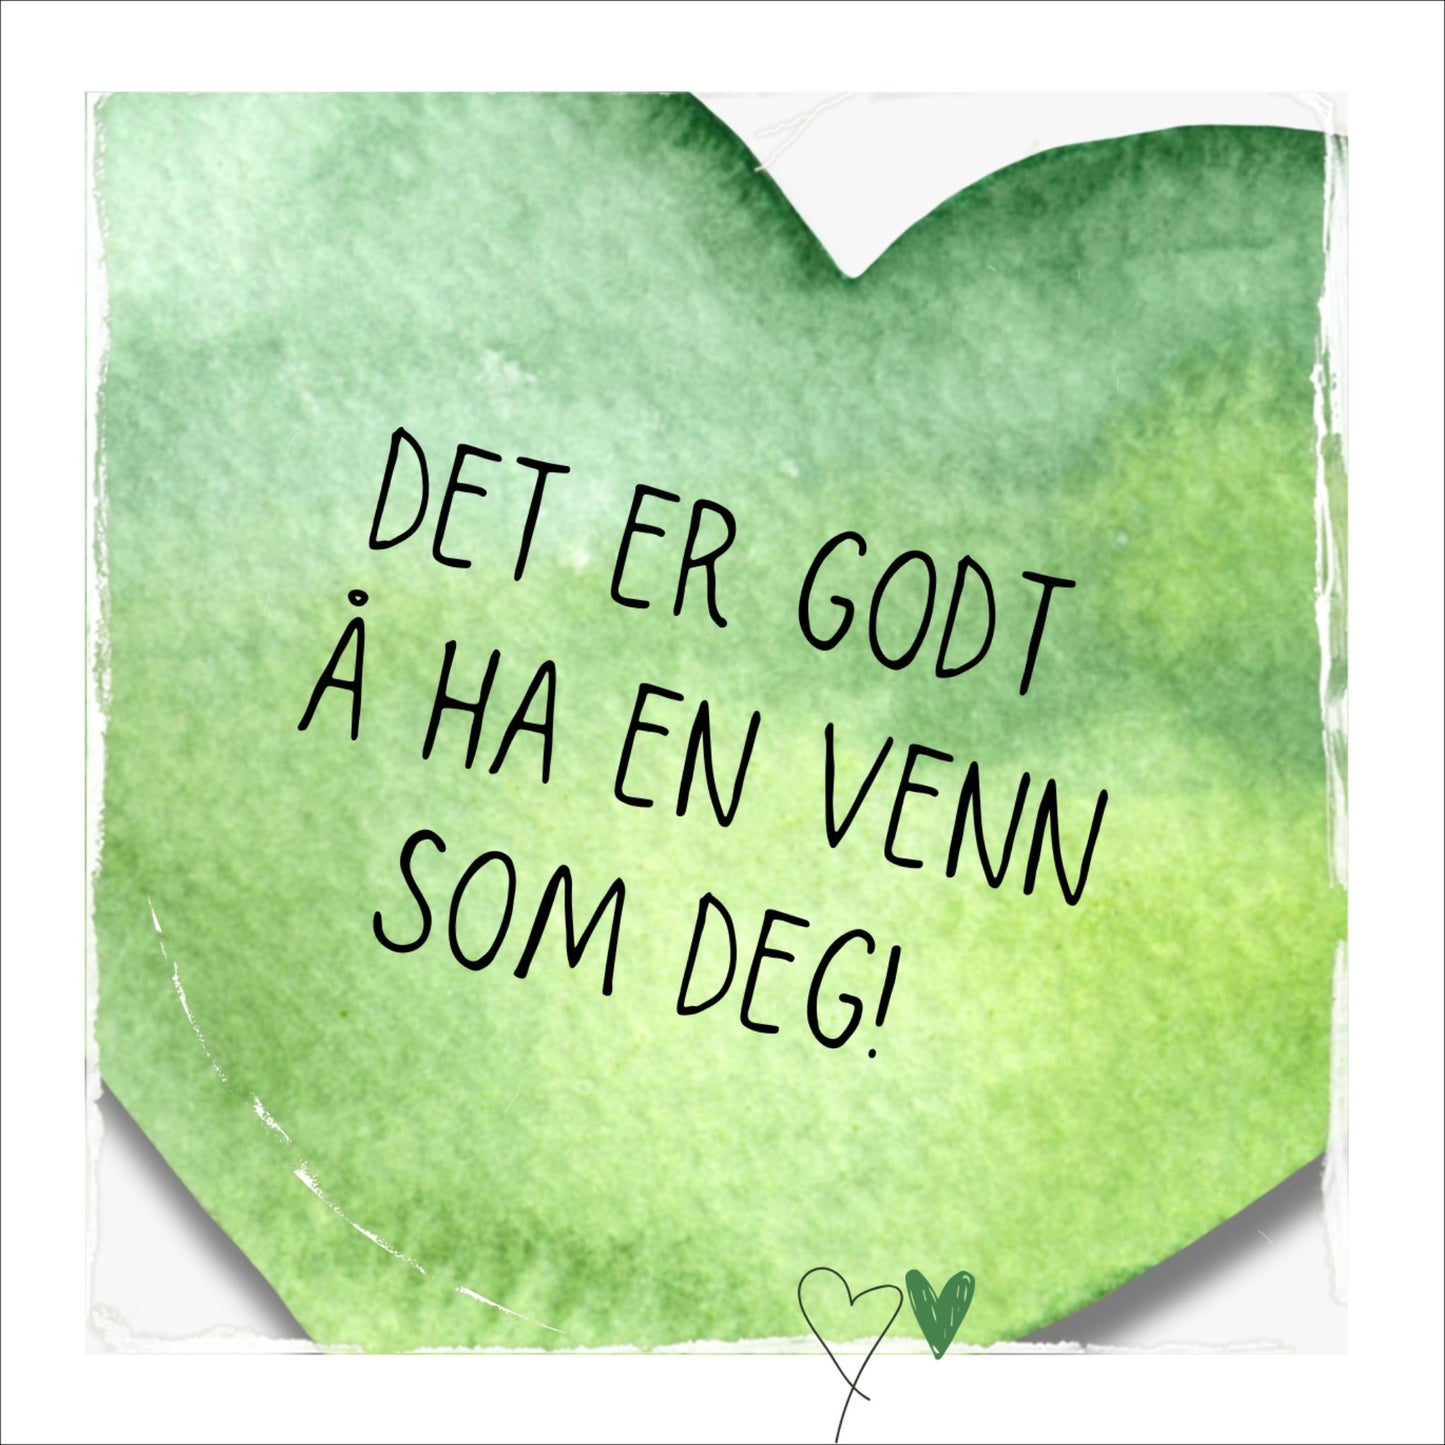 Plakat med grønt hjerte og tekst "Det er godt å ha en venn som deg". Med hvit kant på 1,5 cm. 